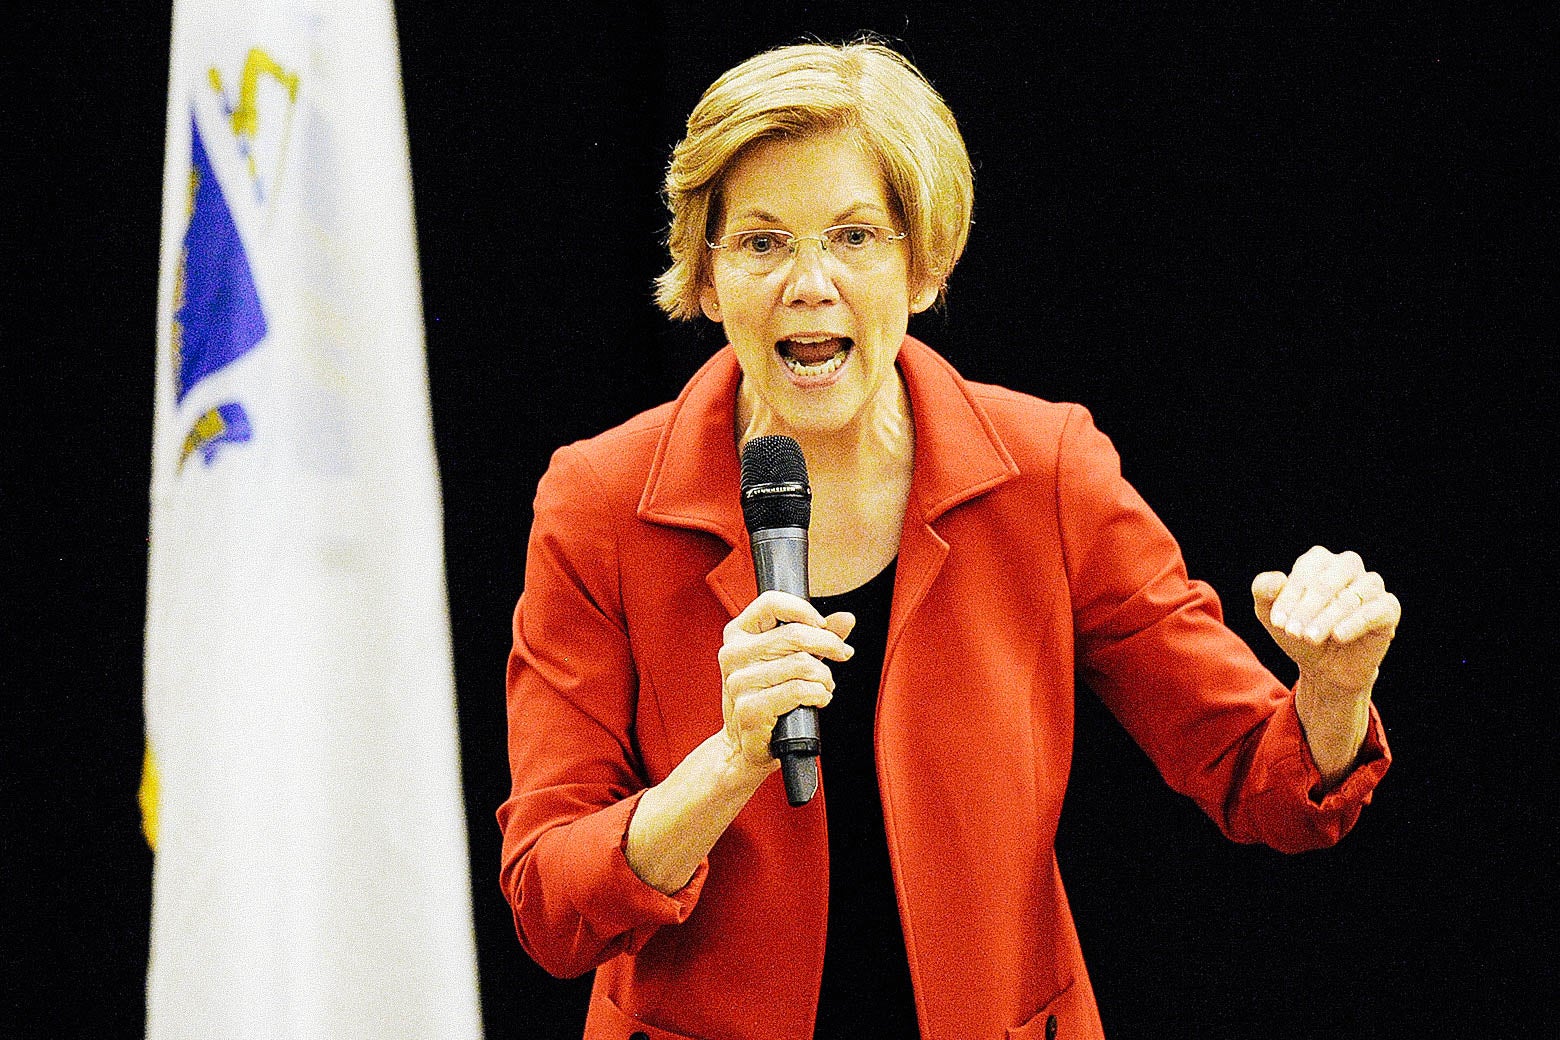 Elizabeth Warren speaks into a microphone.